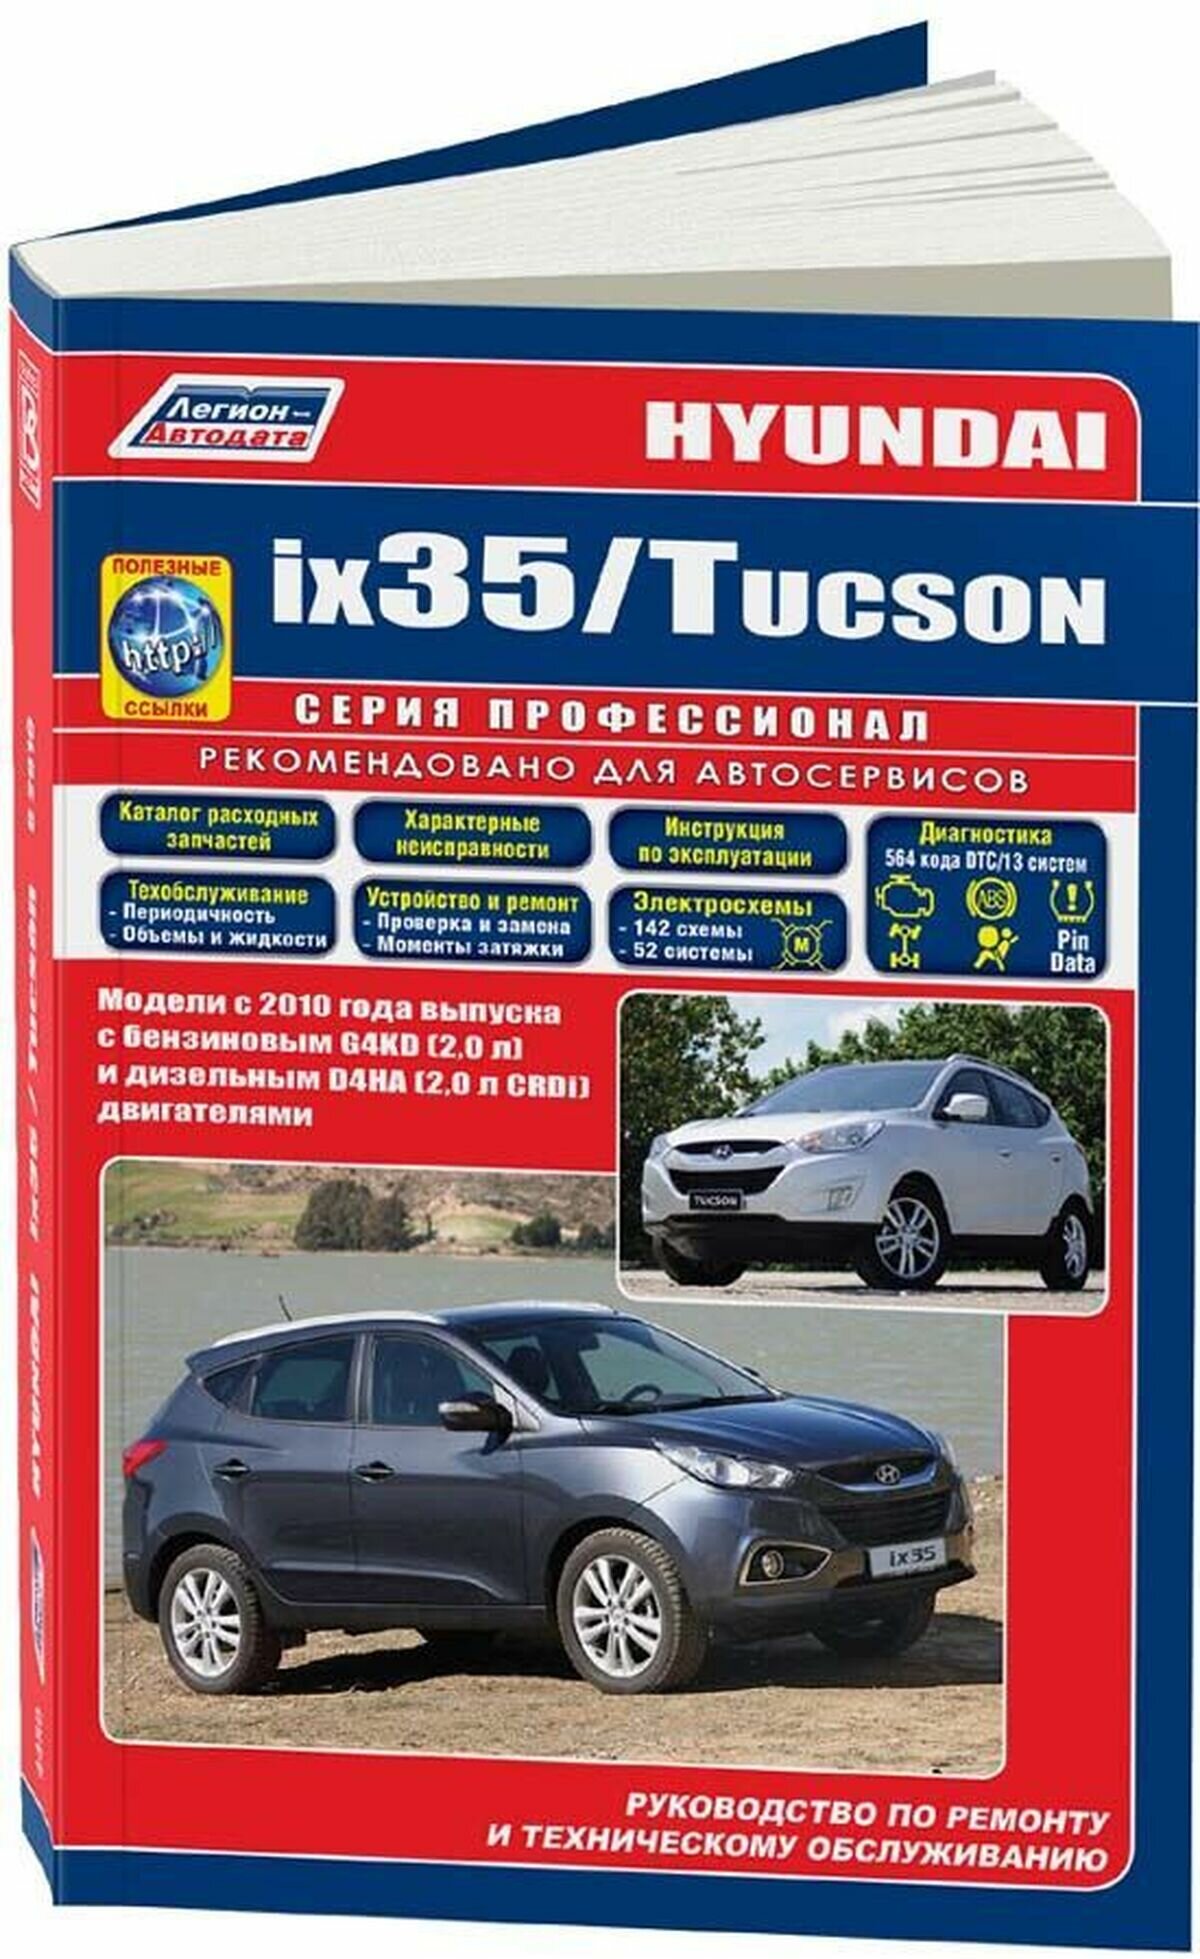 Hyundai ix35 / Tucson. Модели c 2010 года выпуска с бензиновым G4KD (2,0 л.) и дизельным D4HA (2,0 л. CRDi) двигателями. Руководство по ремонту и техническому обслуживанию (+ полезные ссылки) - фото №3